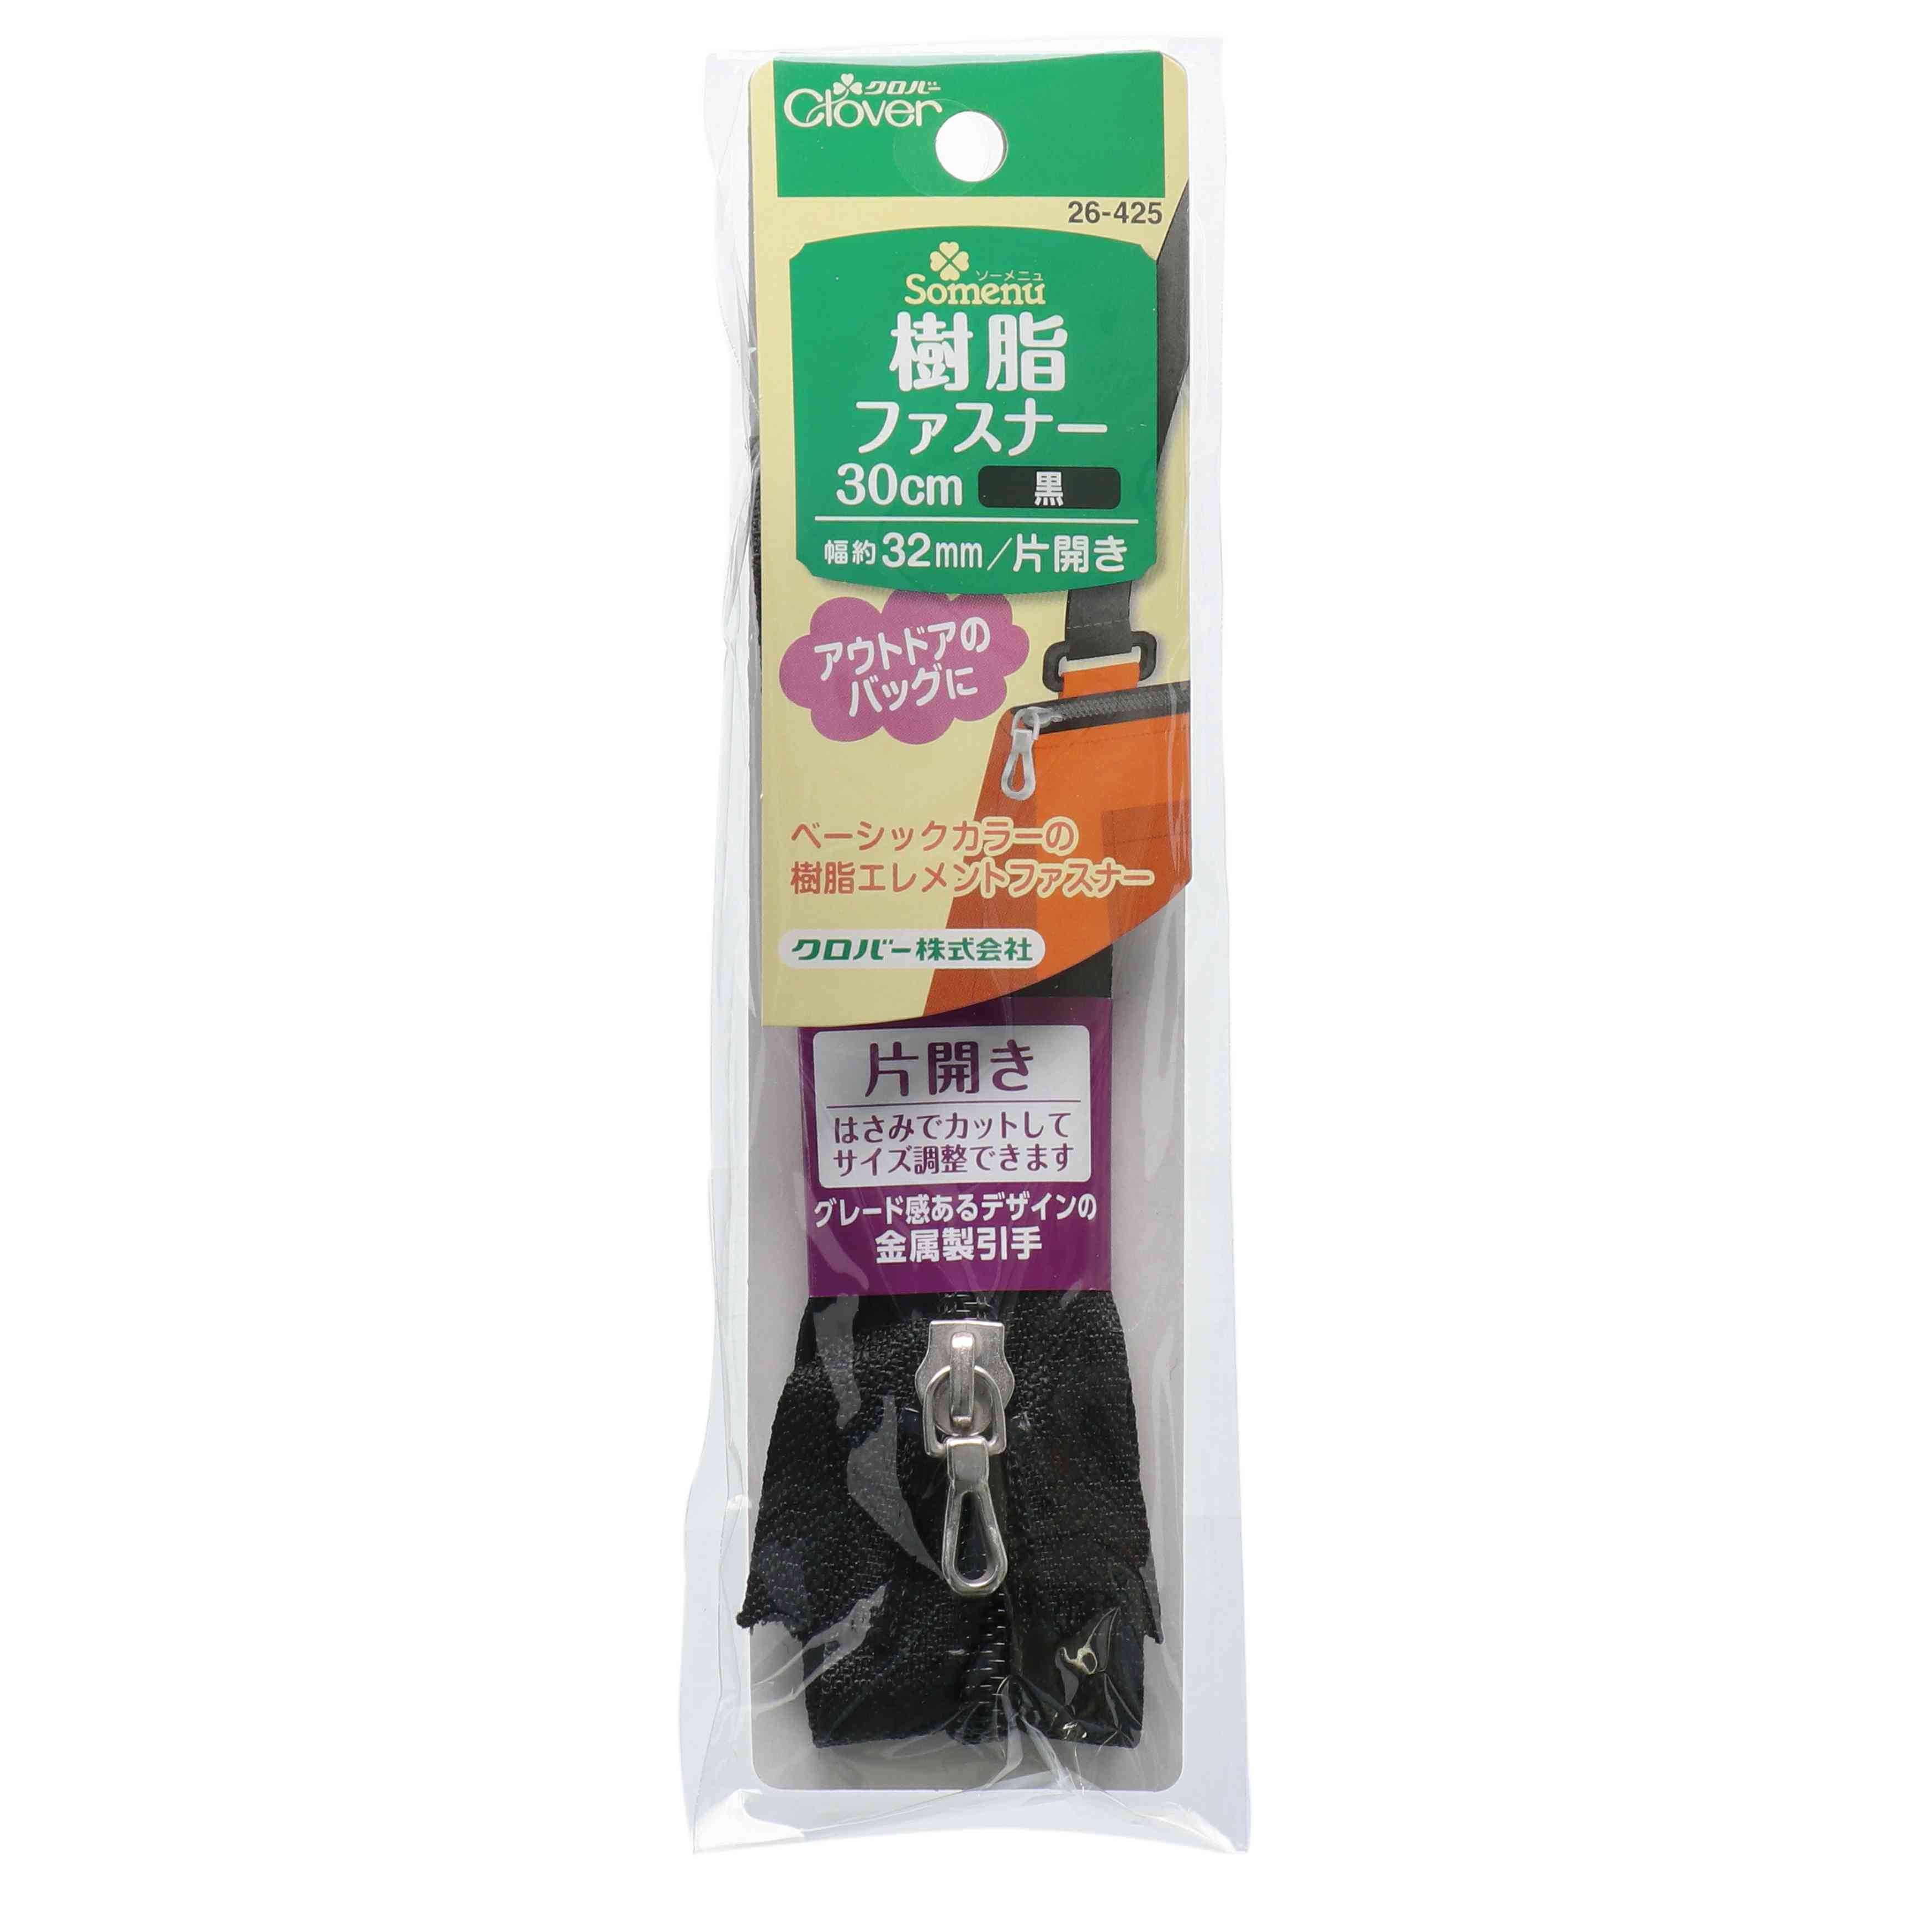 26425 Resin Zipper 30cm Single Opening Black[Handicraft Supplies] Clover